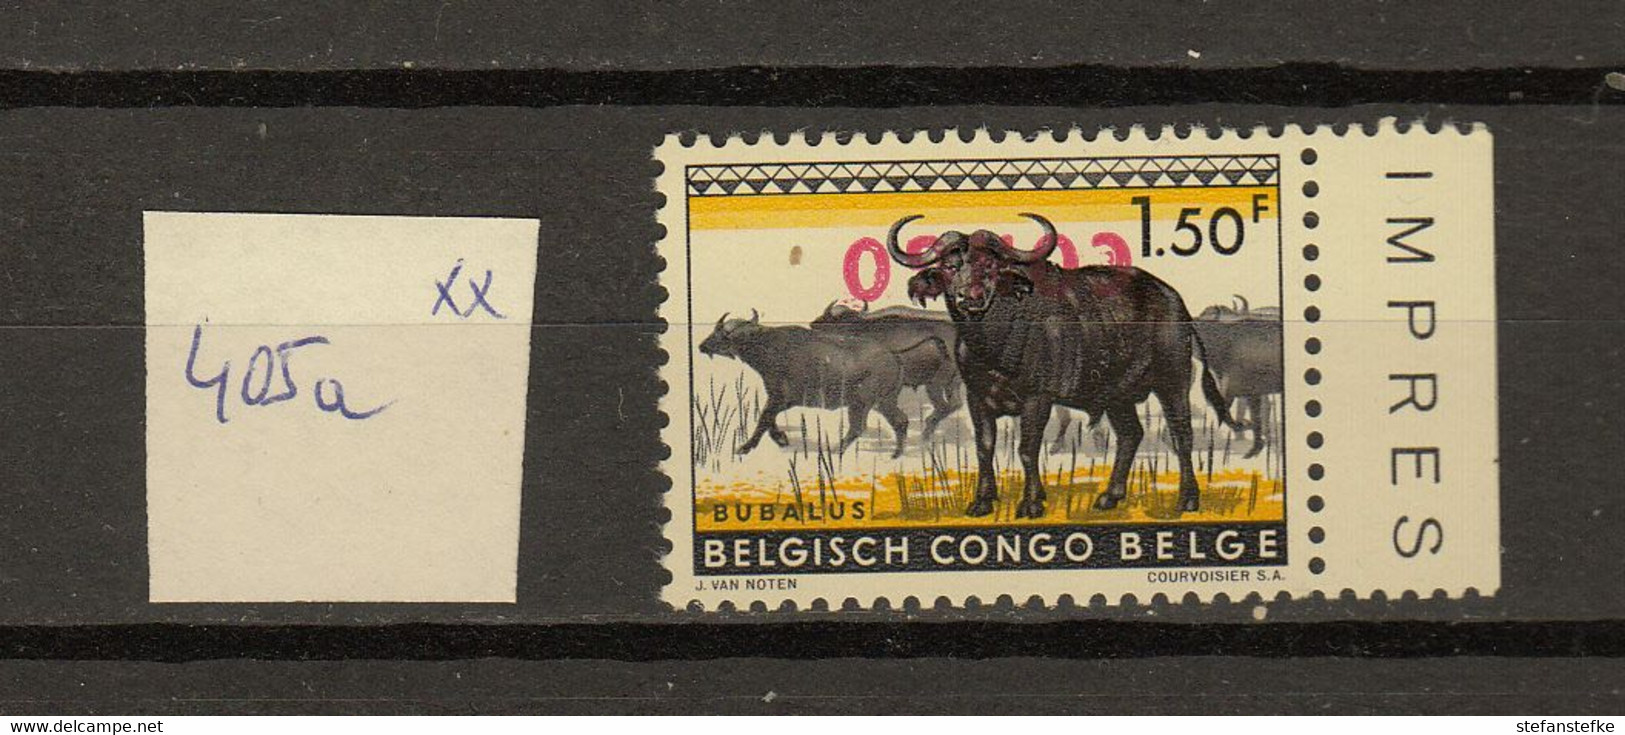 Congo  Ocb Nr :  REVERSED 405a  ** MNH (zie  Scan) - Ungebraucht